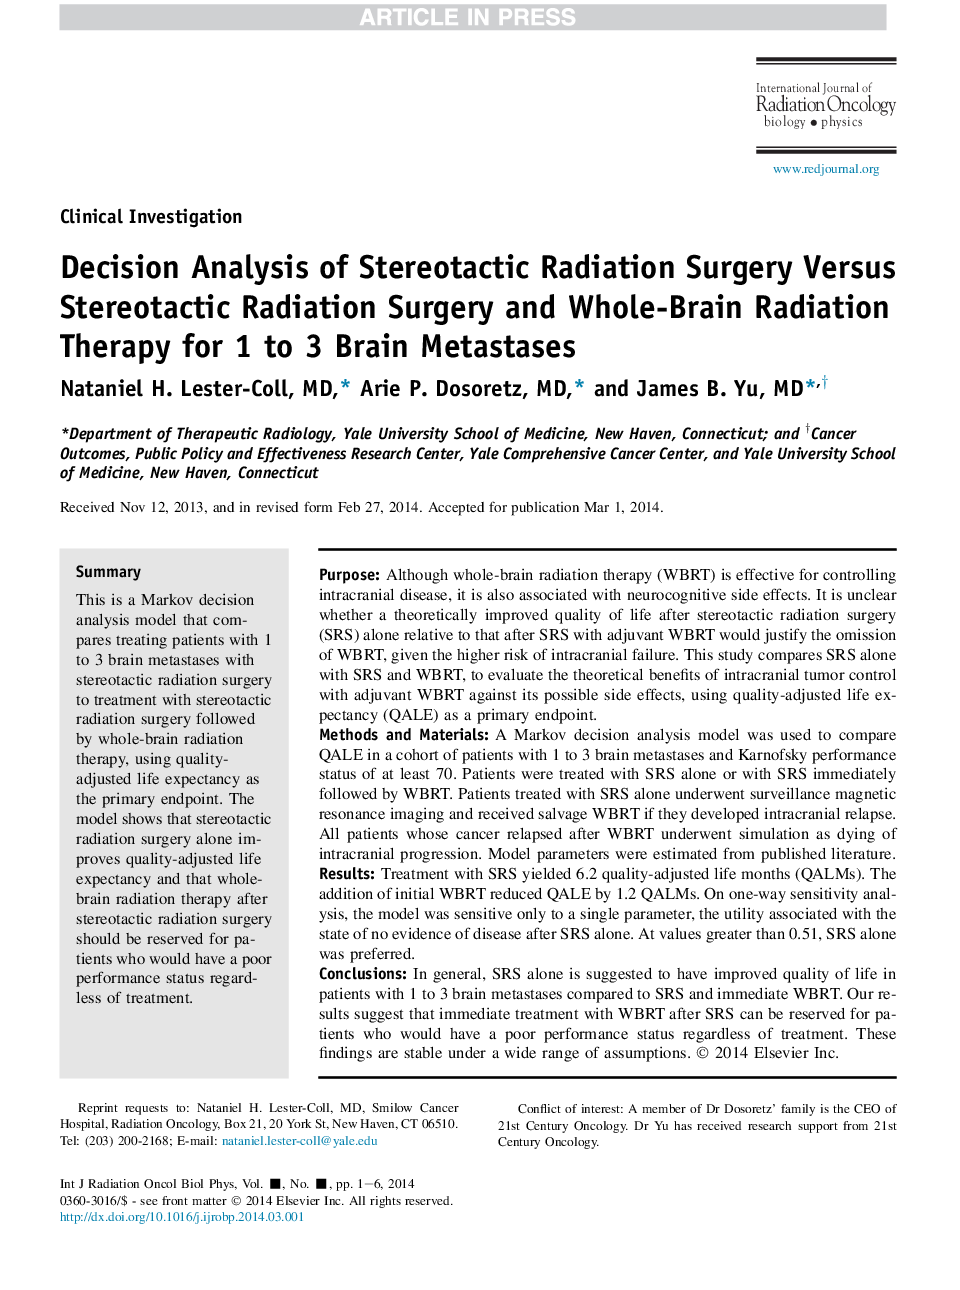 تجزیه و تحلیل تصمیم گیری جراحی پرتو استریوتاکتیک در برابر جراحی پرتو استریوتاکتیک و درمان تابش کامل مغز برای 1 تا 3 متاستاز مغزی 